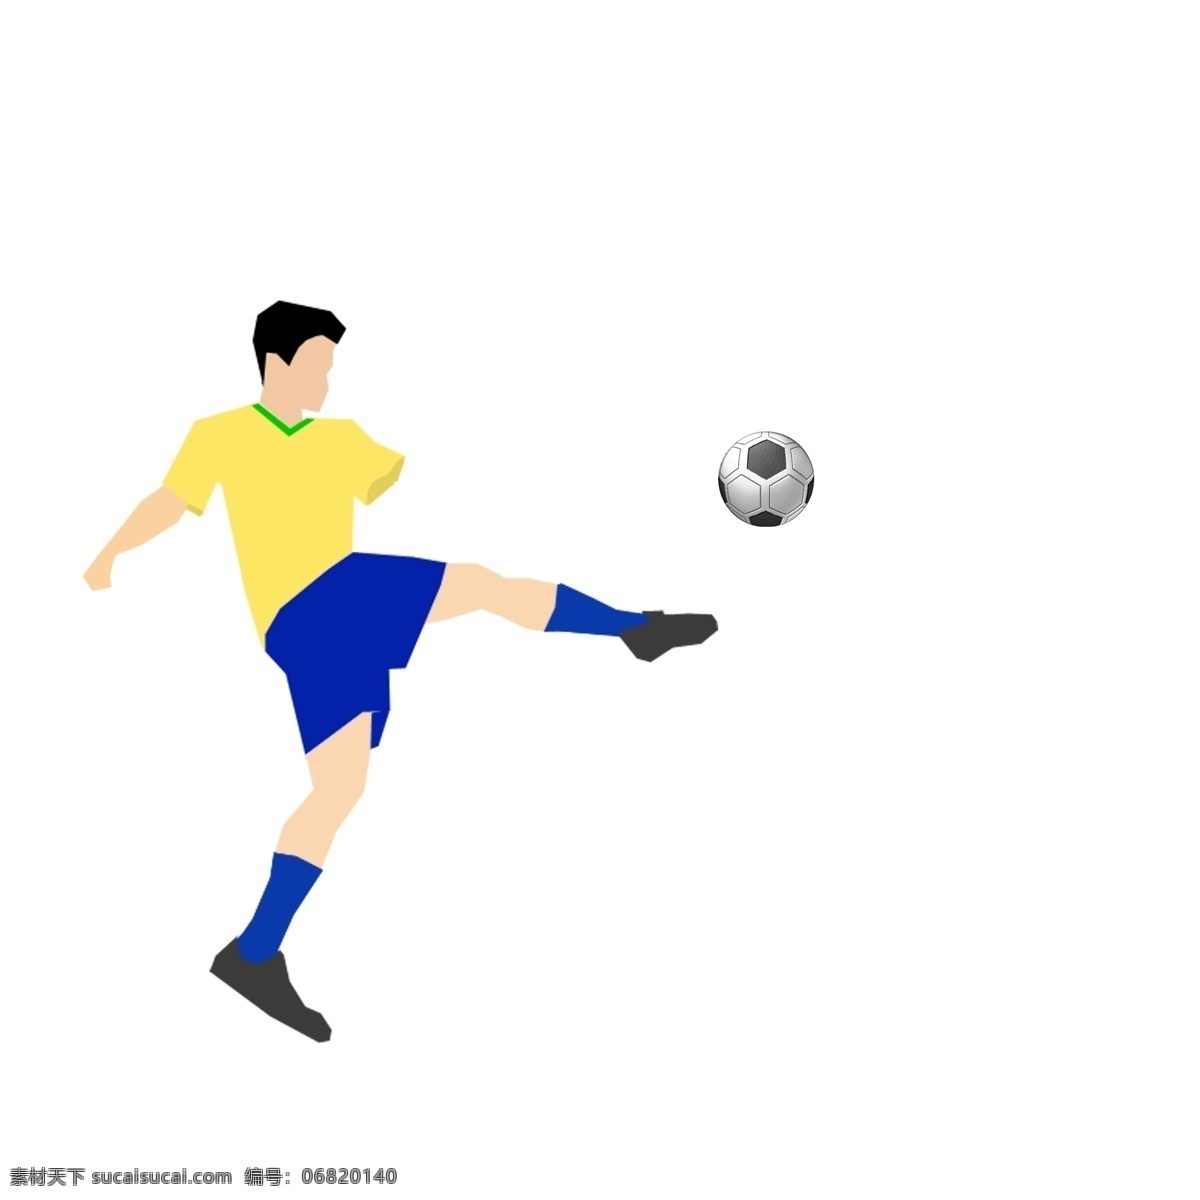 俄罗斯 世界杯 足球赛 免 抠 图 残疾 断臂 踢 足球 单手踢足球 免抠透明背景 残疾人 运动 简约 小清新